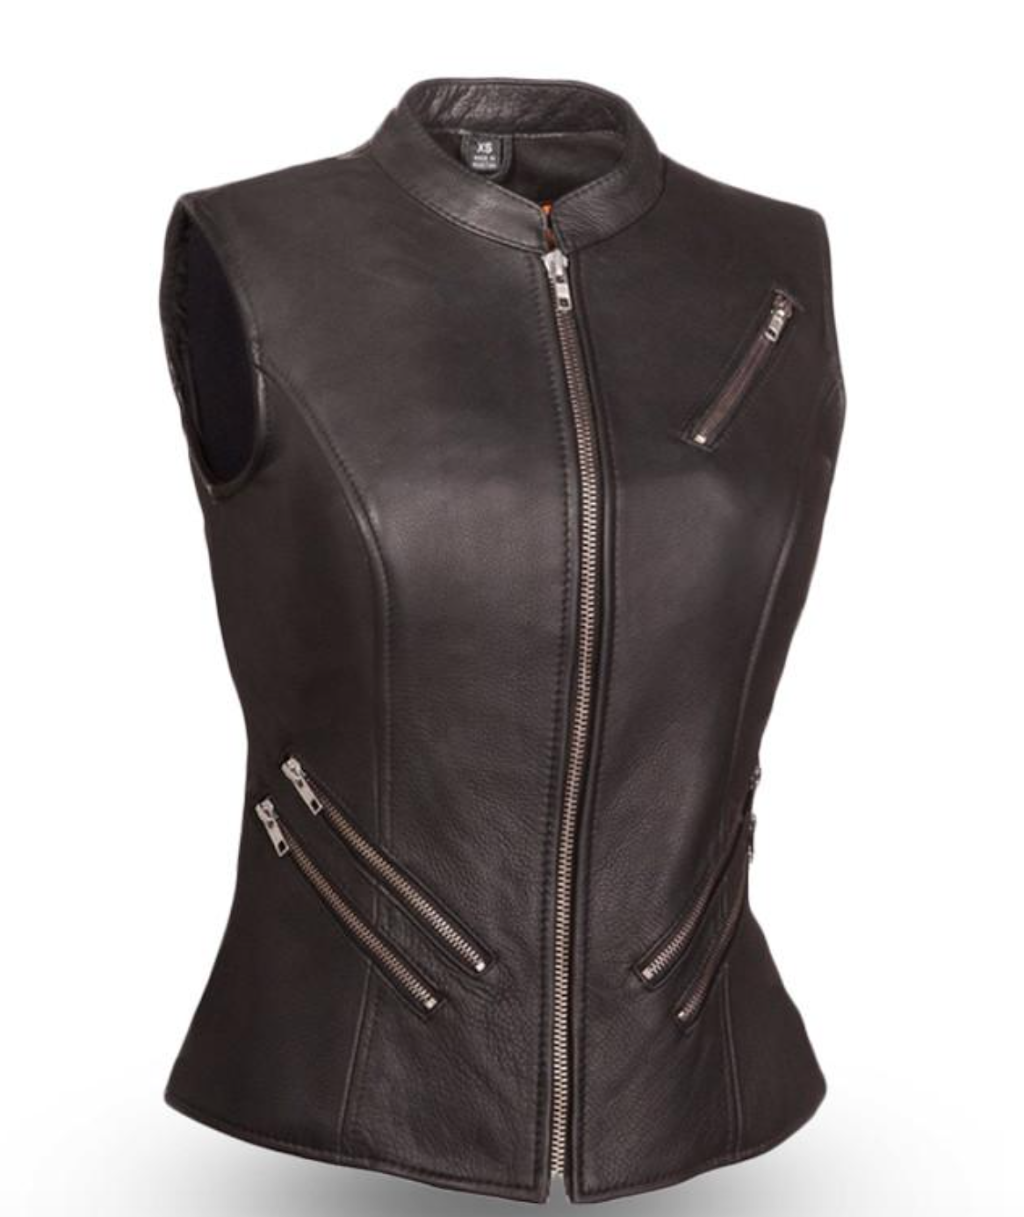 Fairmont - Women's Leather Motorcycle Vest